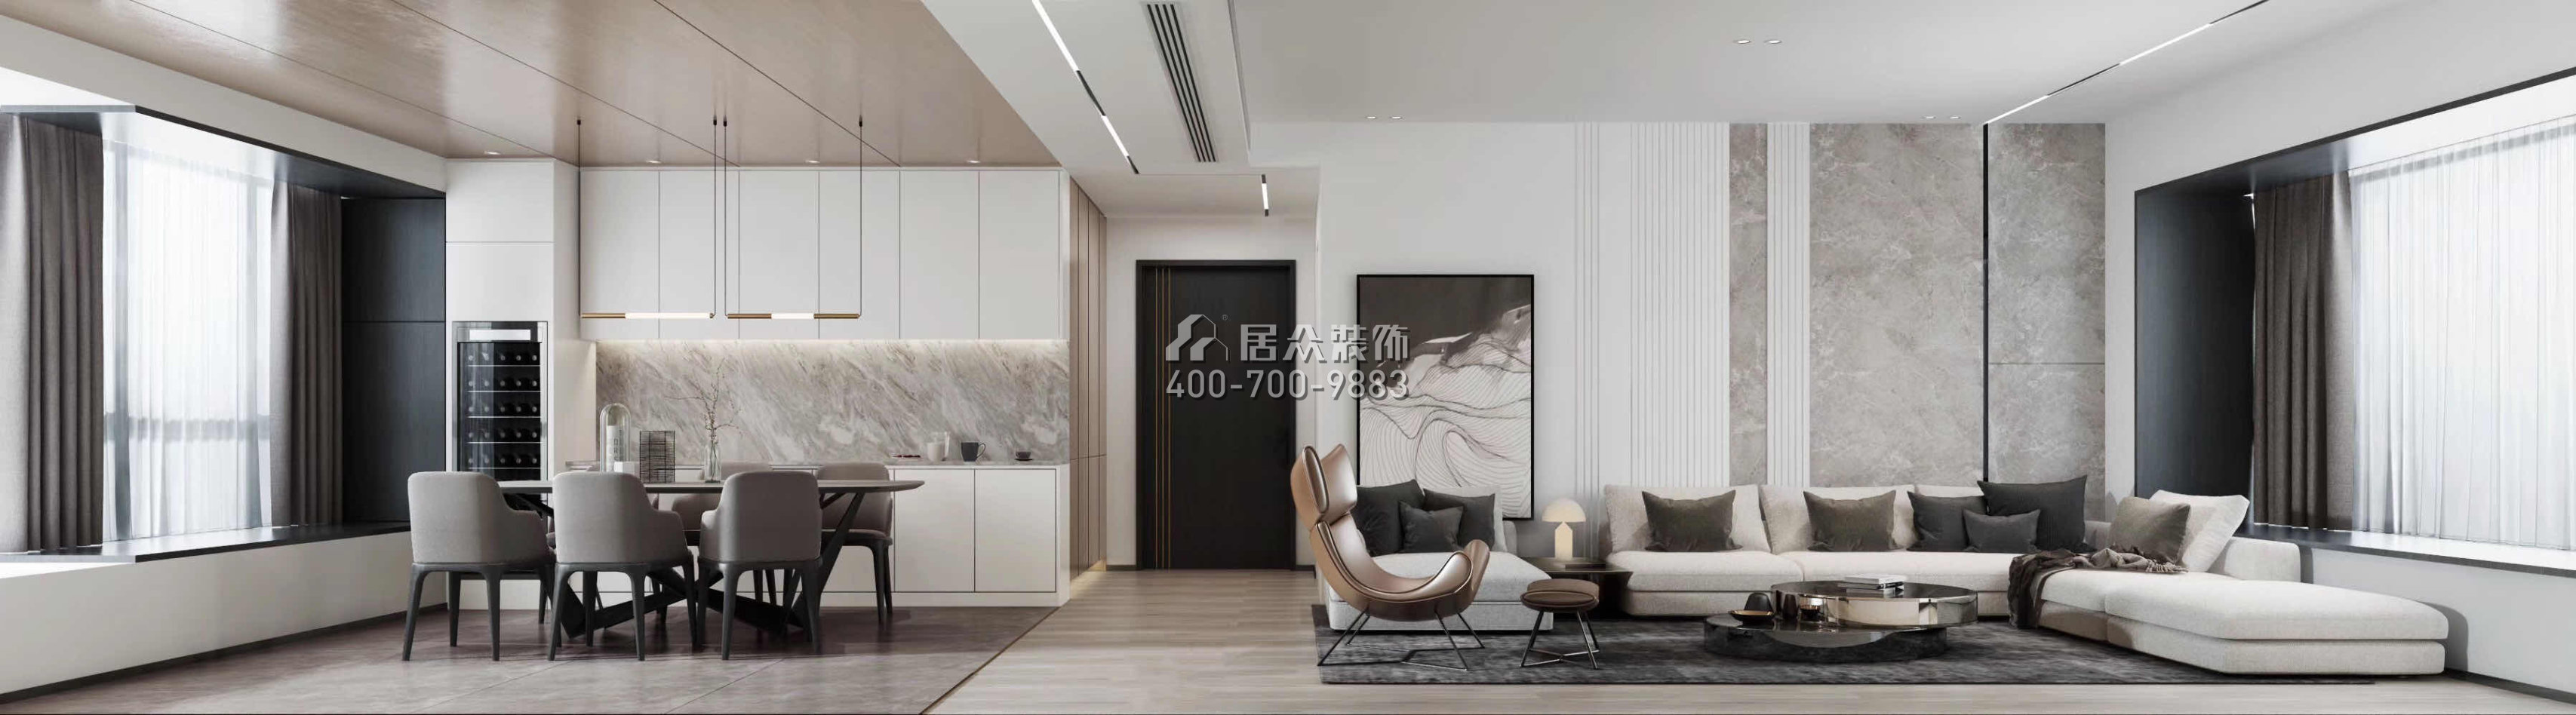 香山美墅五期171平方米中式風格平層戶型客廳裝修效果圖